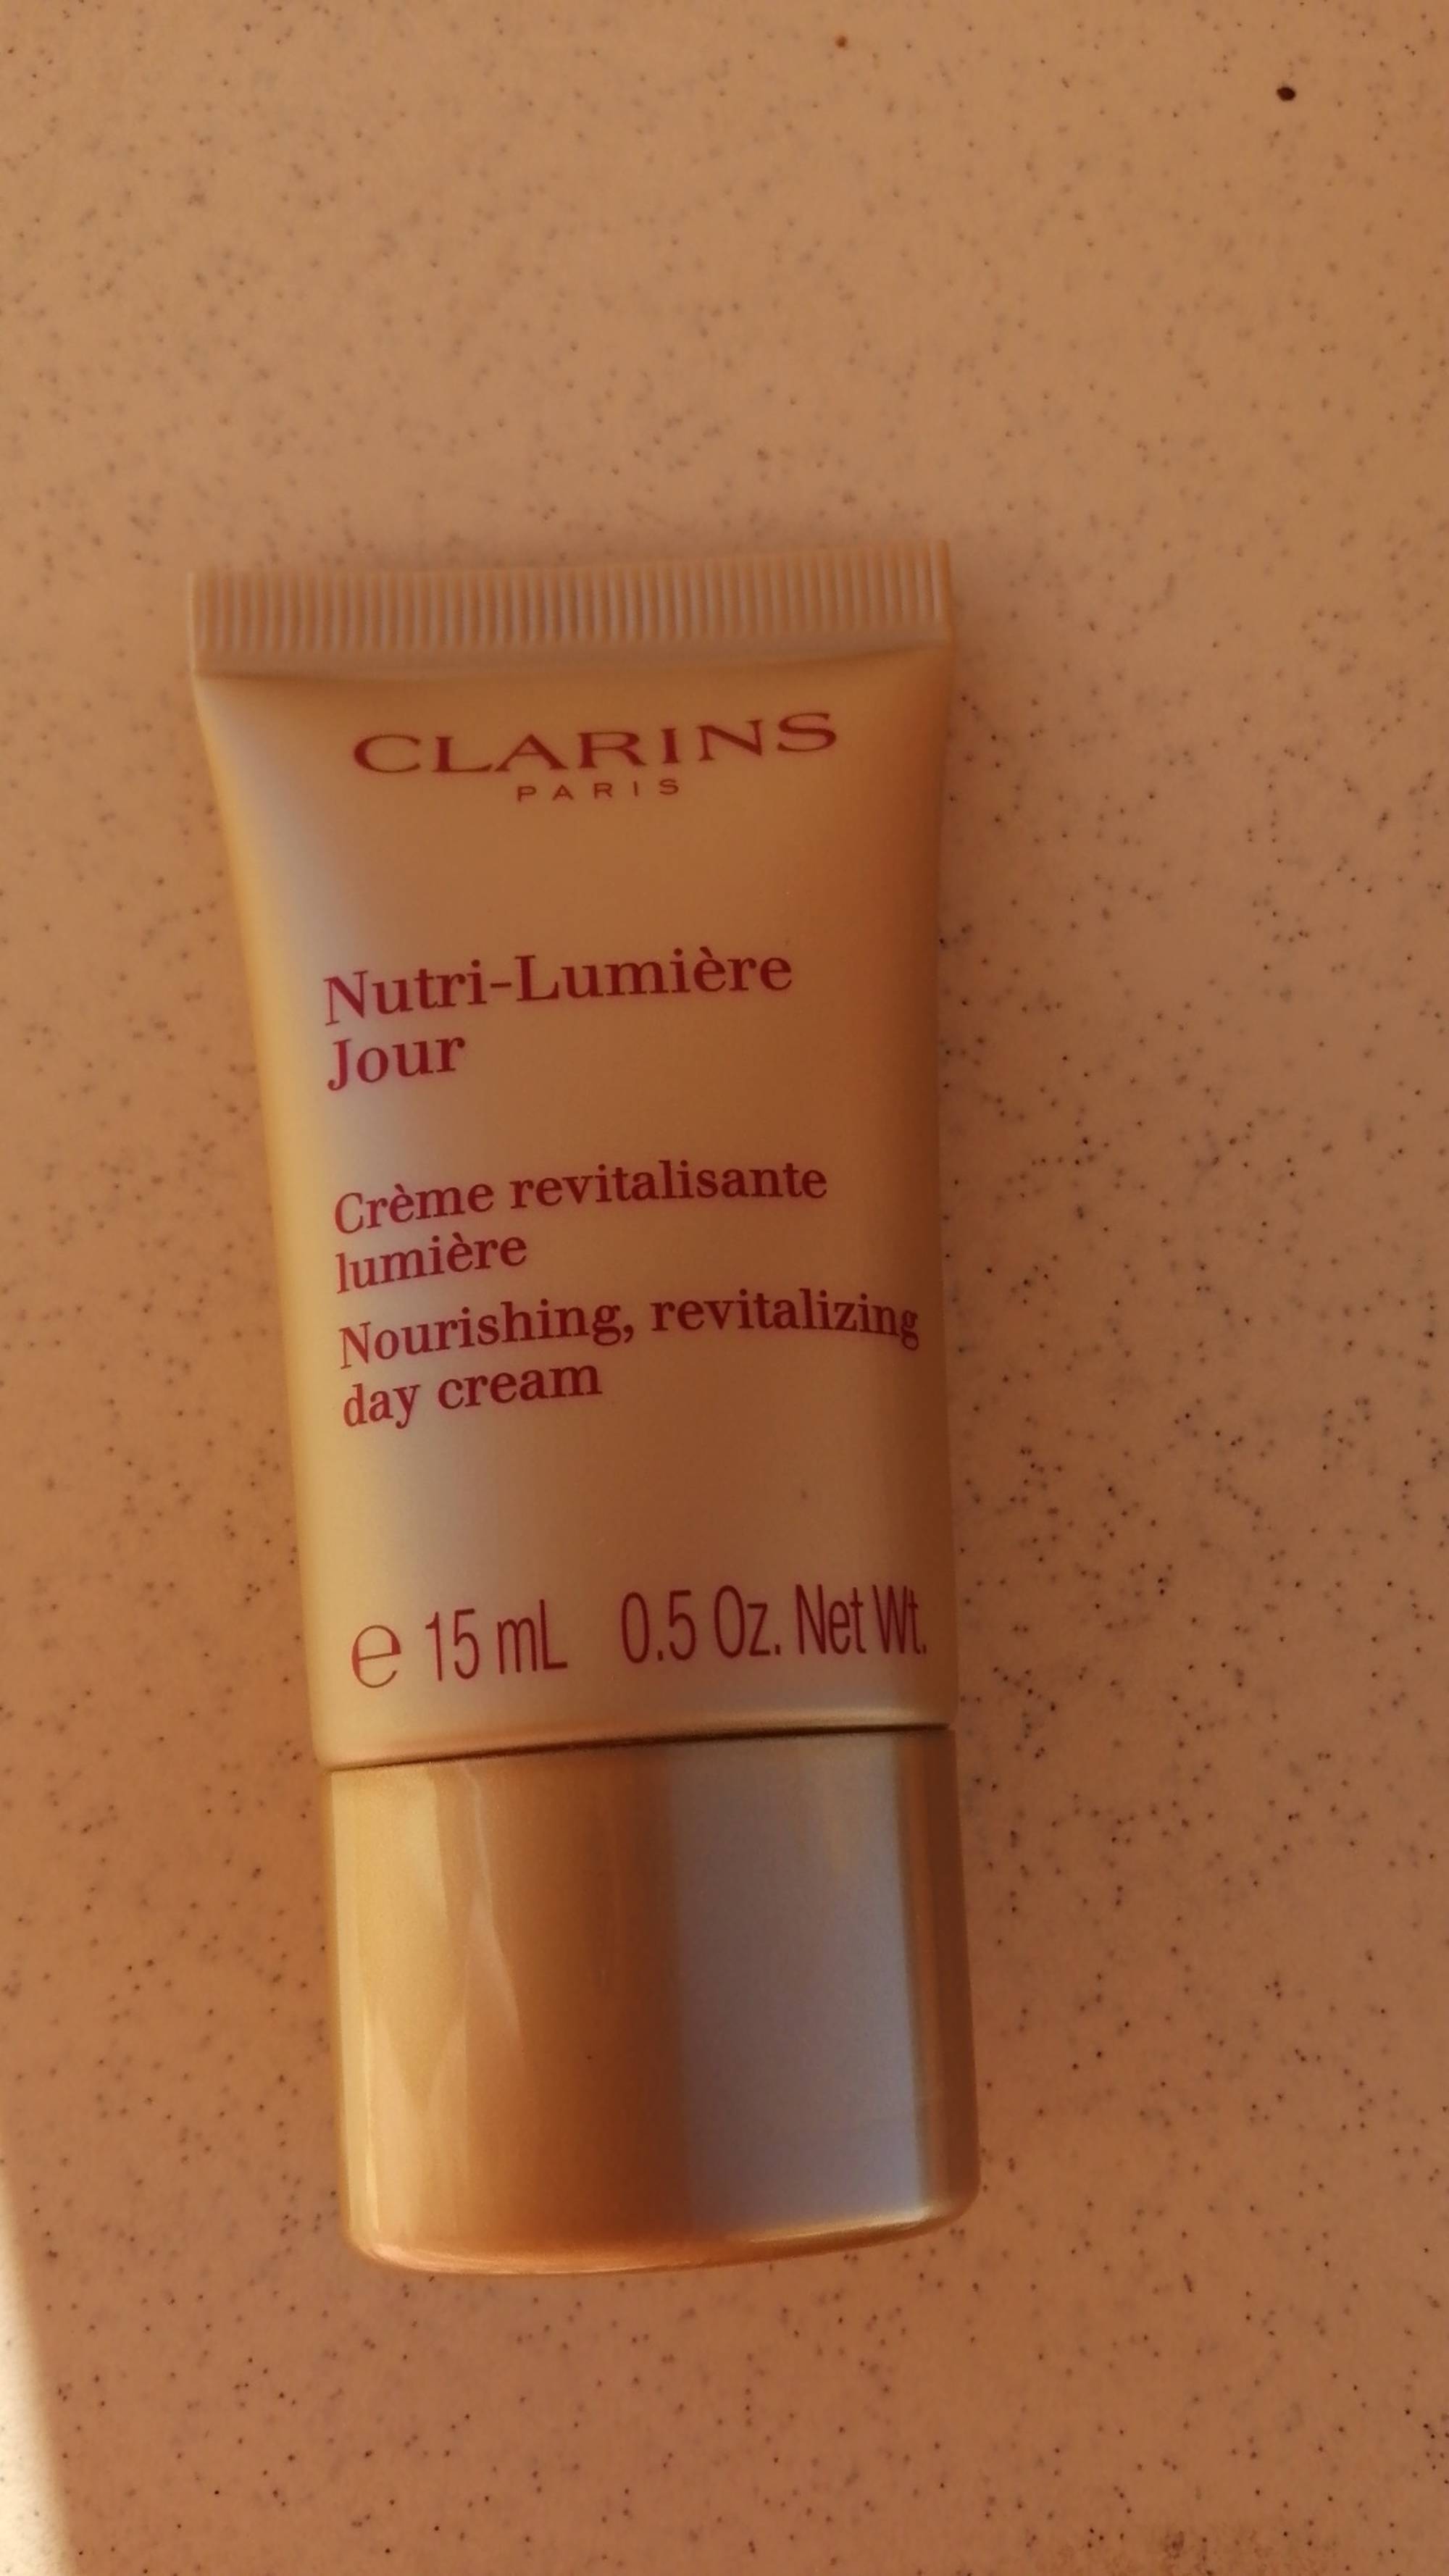 CLARINS - Nutri-lumière jour - Crème revitalisante lumière